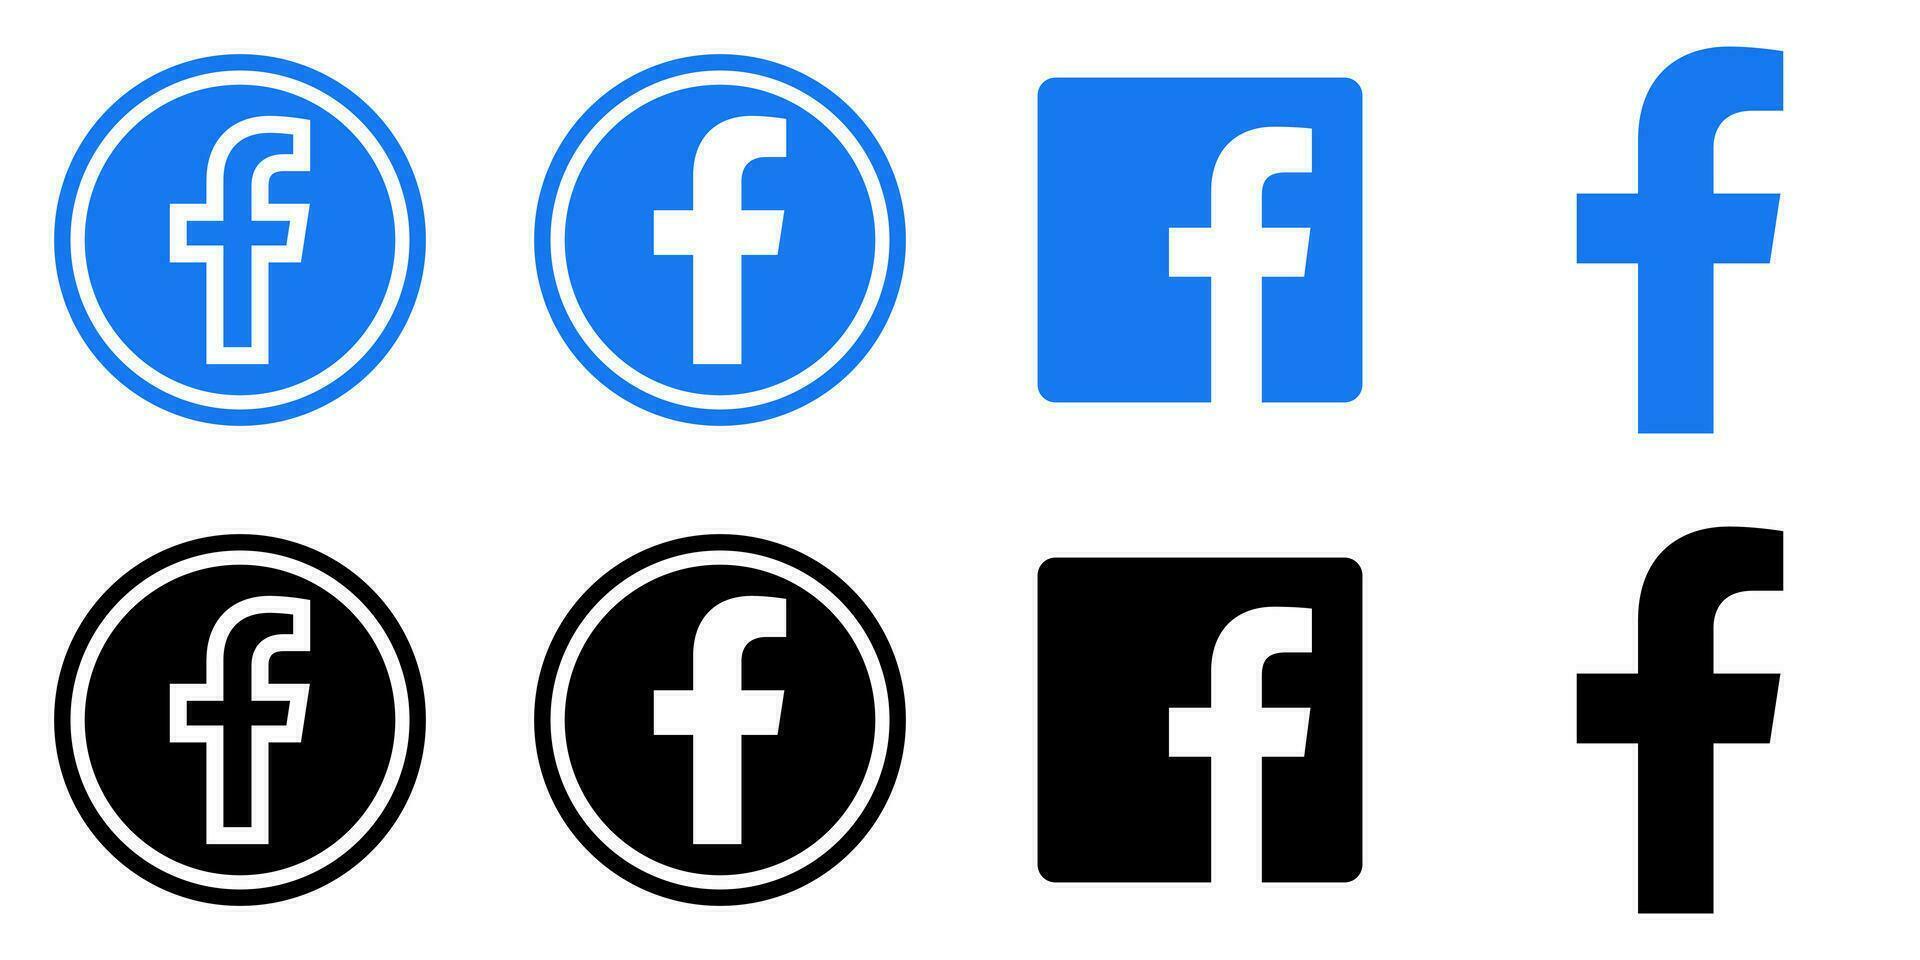 Facebook Logo - - Vektor einstellen Sammlung - - schwarz Silhouette gestalten - - Original neueste Blau Farbe - - isoliert. f Symbol zum Netz Buchseite, Handy, Mobiltelefon App oder drucken.